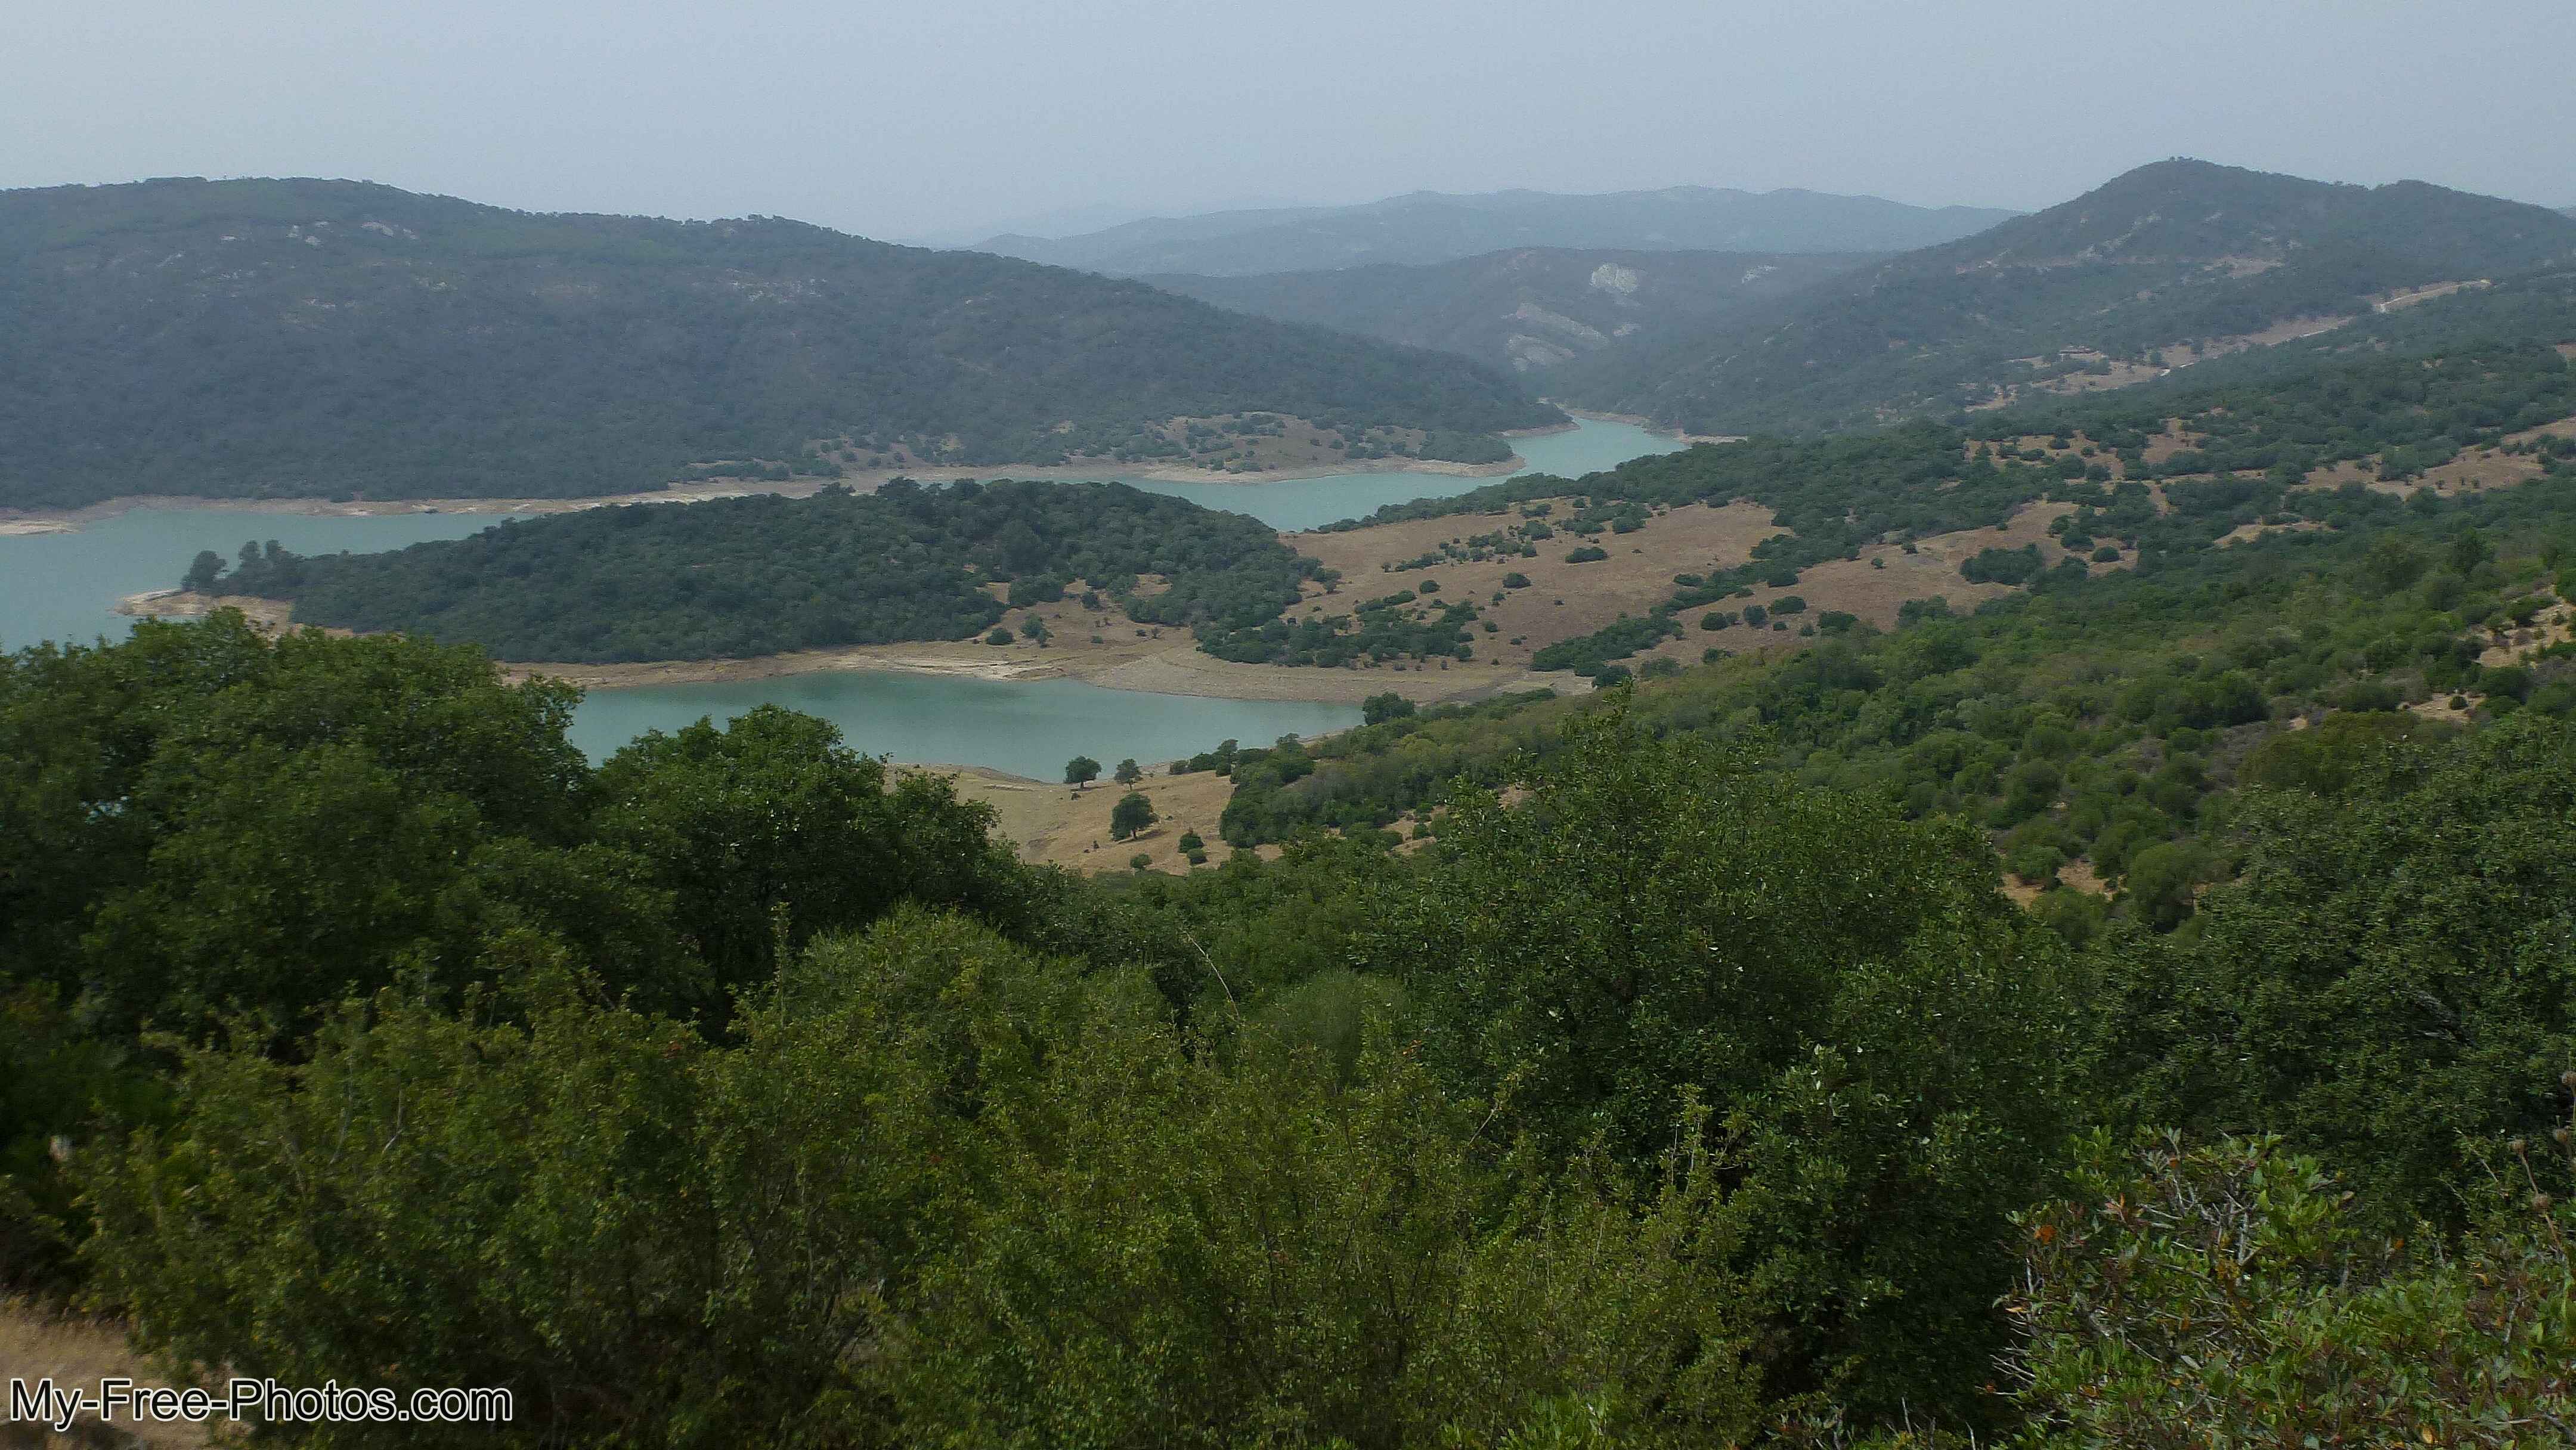 Guadarranque reservoir, Castellar de la Frontera, Spain.